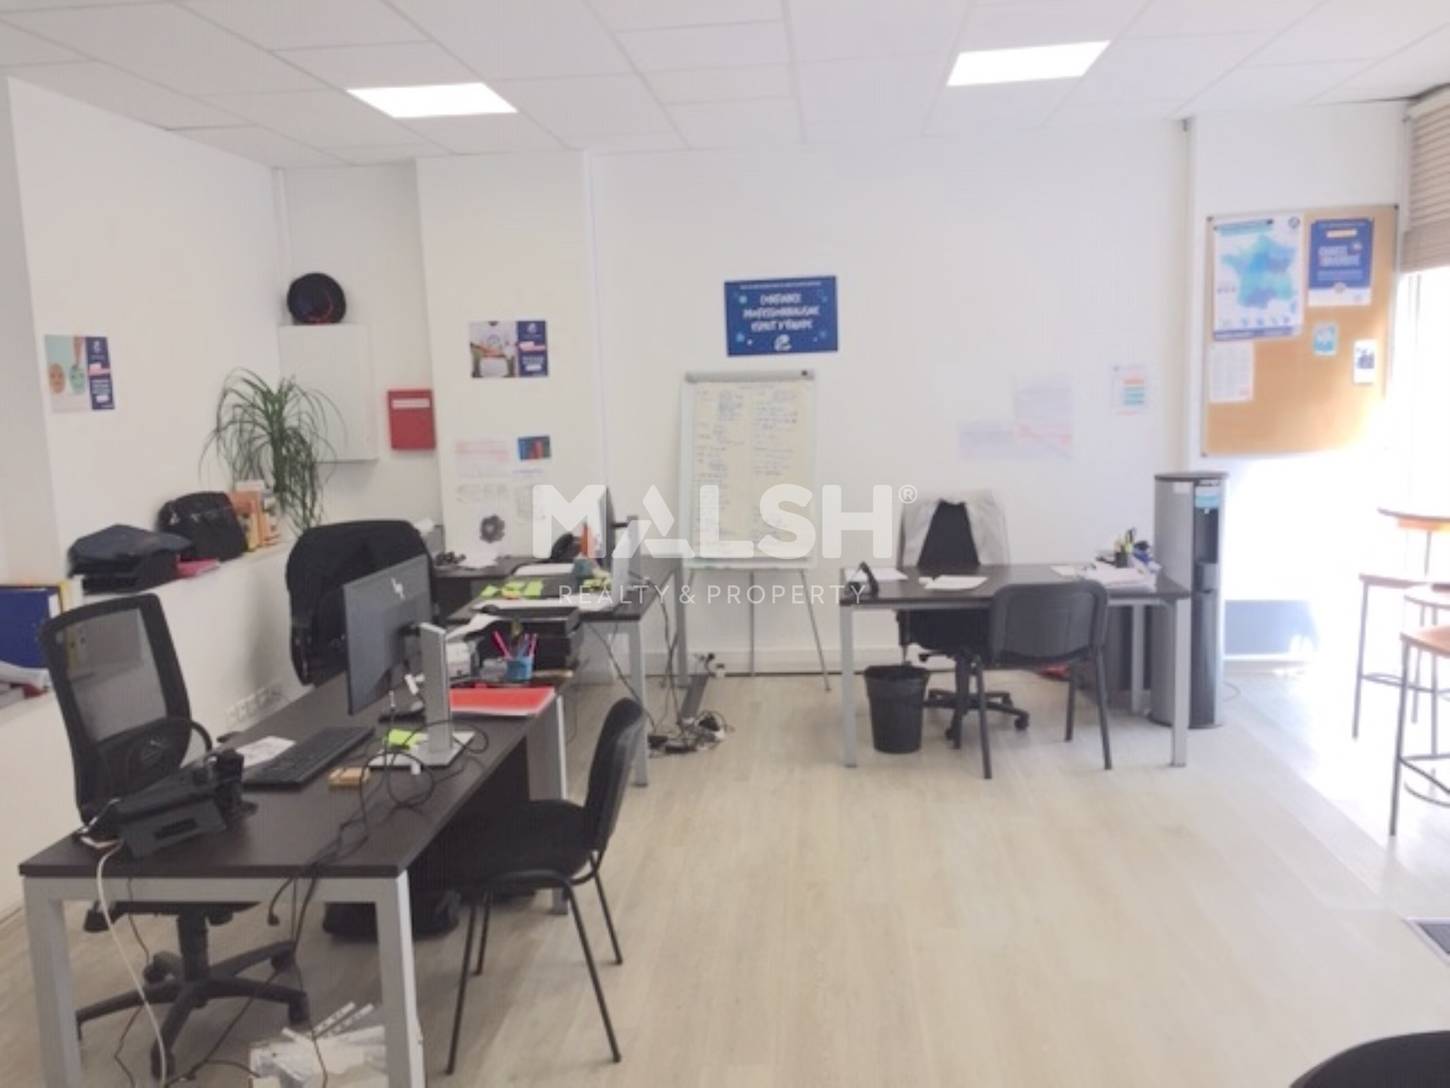 MALSH Realty & Property - Bureaux - Lyon 6° - Lyon - MD_